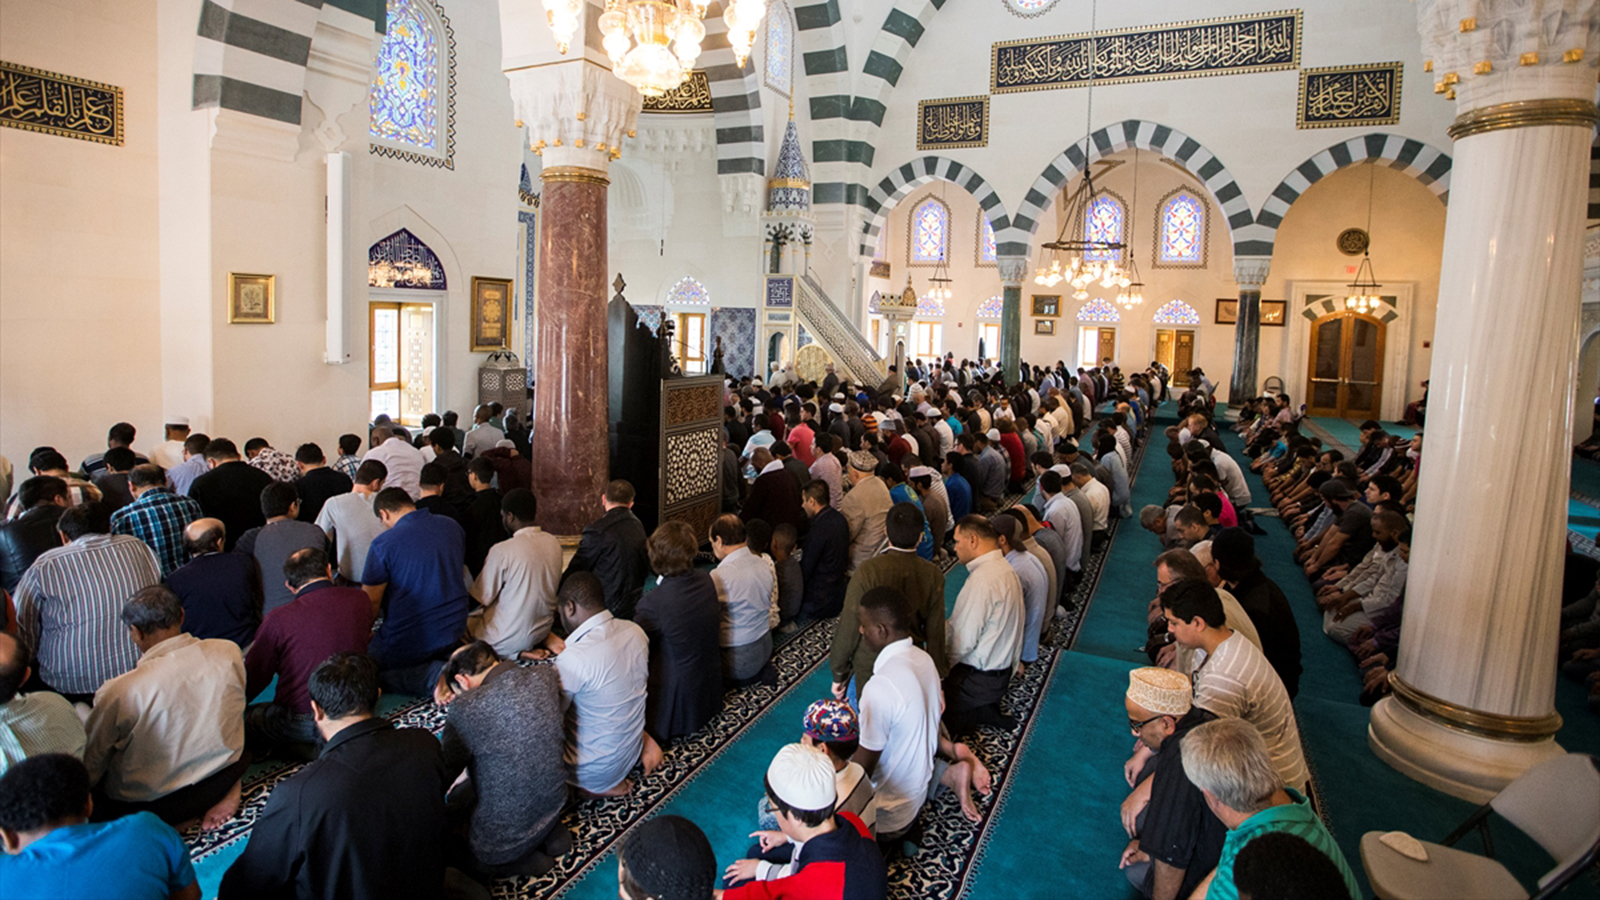 ‪المجمع الإسلامي يجذب المسلمين في مختلف أرجاء أميركا خاصة في أيام الجمعة‬ (الأناضول)